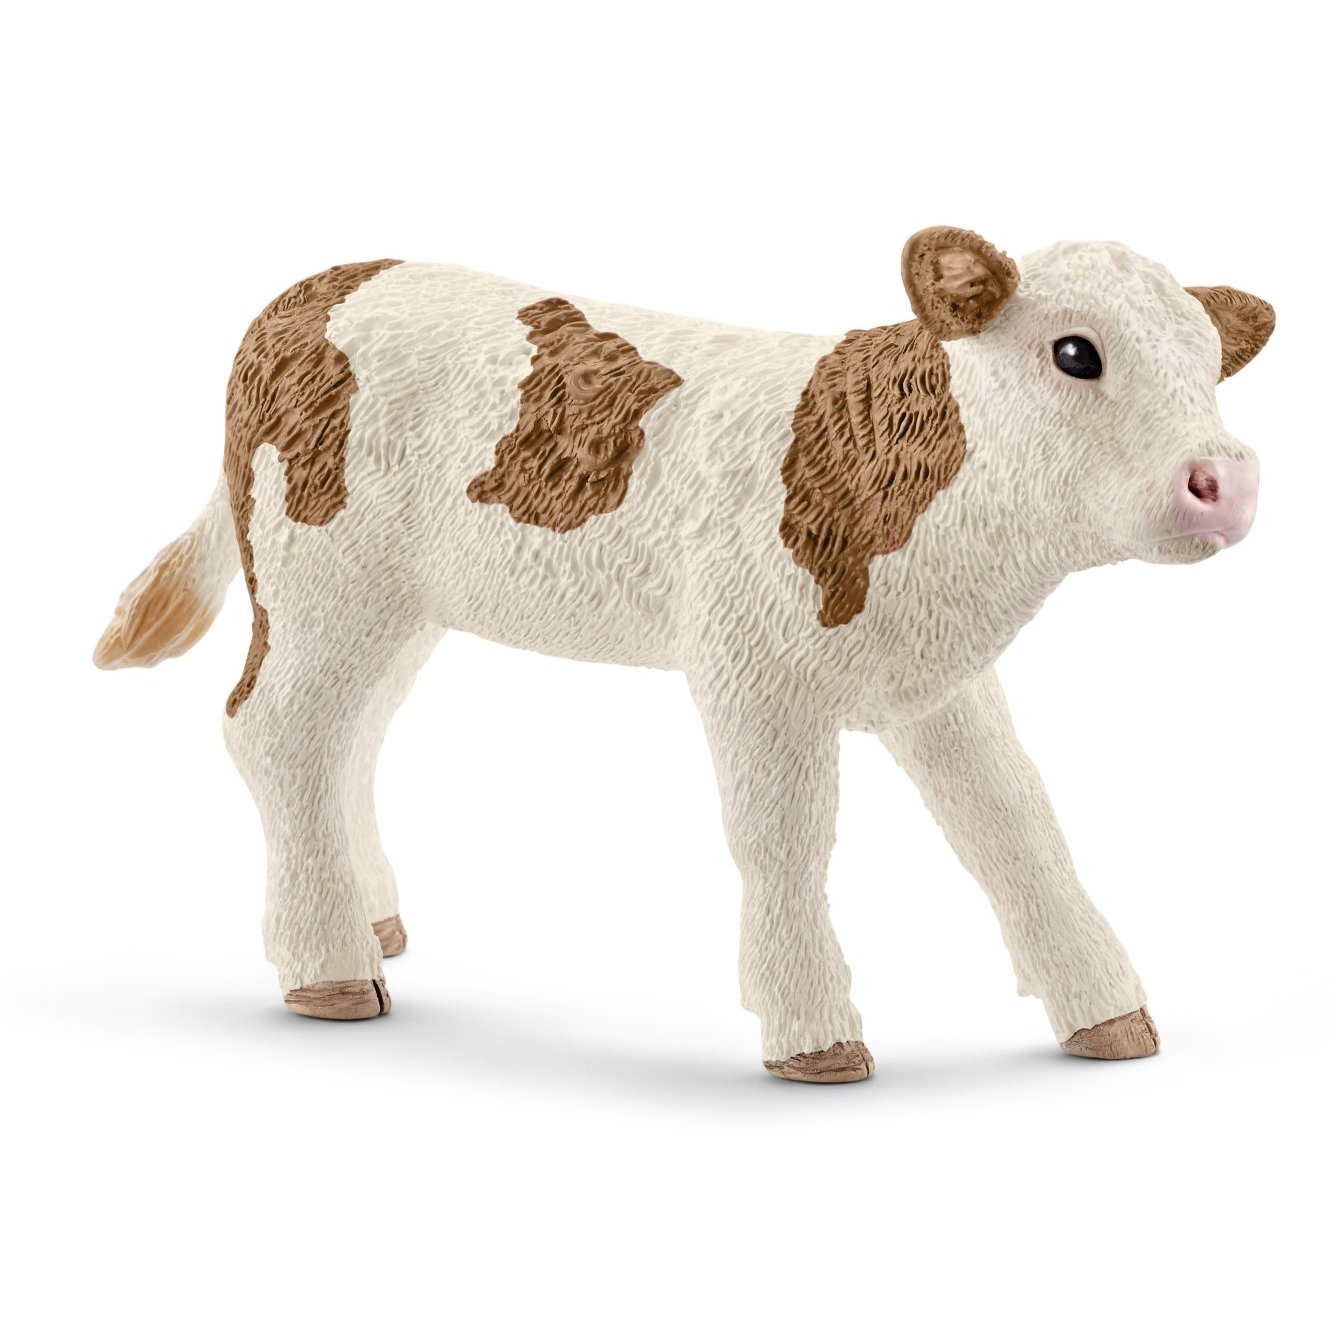 Figurina vitel Simmental, Schleich 13802